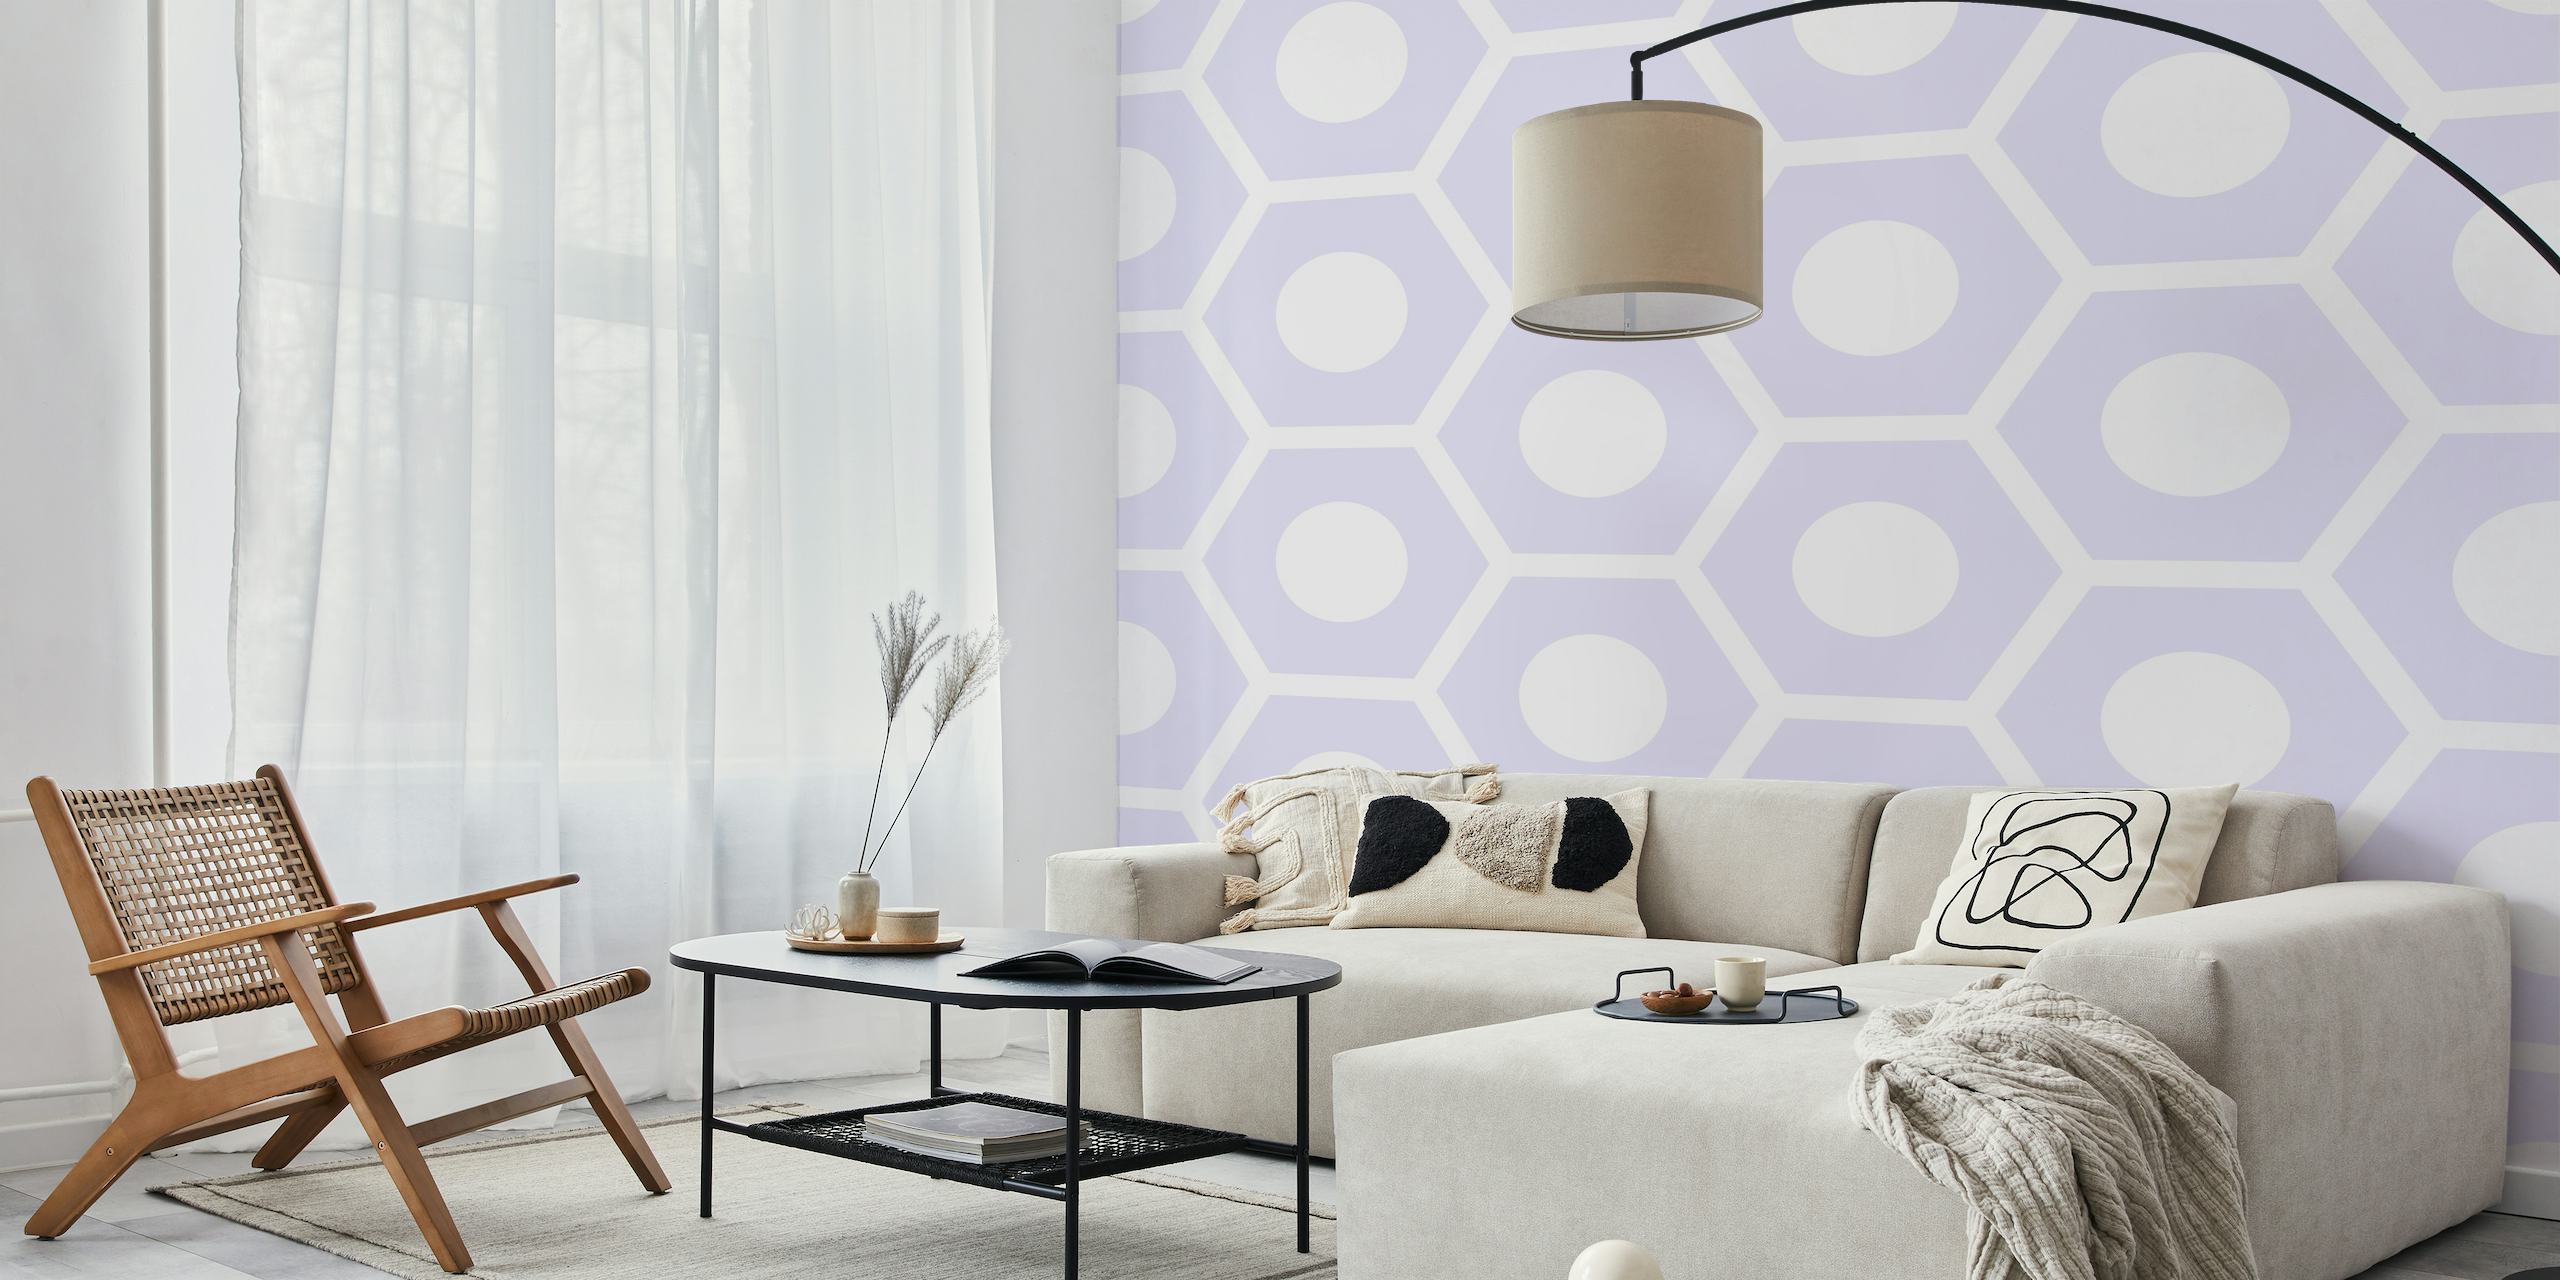 Papel pintado con motivos hexagonales violetas para una decoración interior moderna y elegante